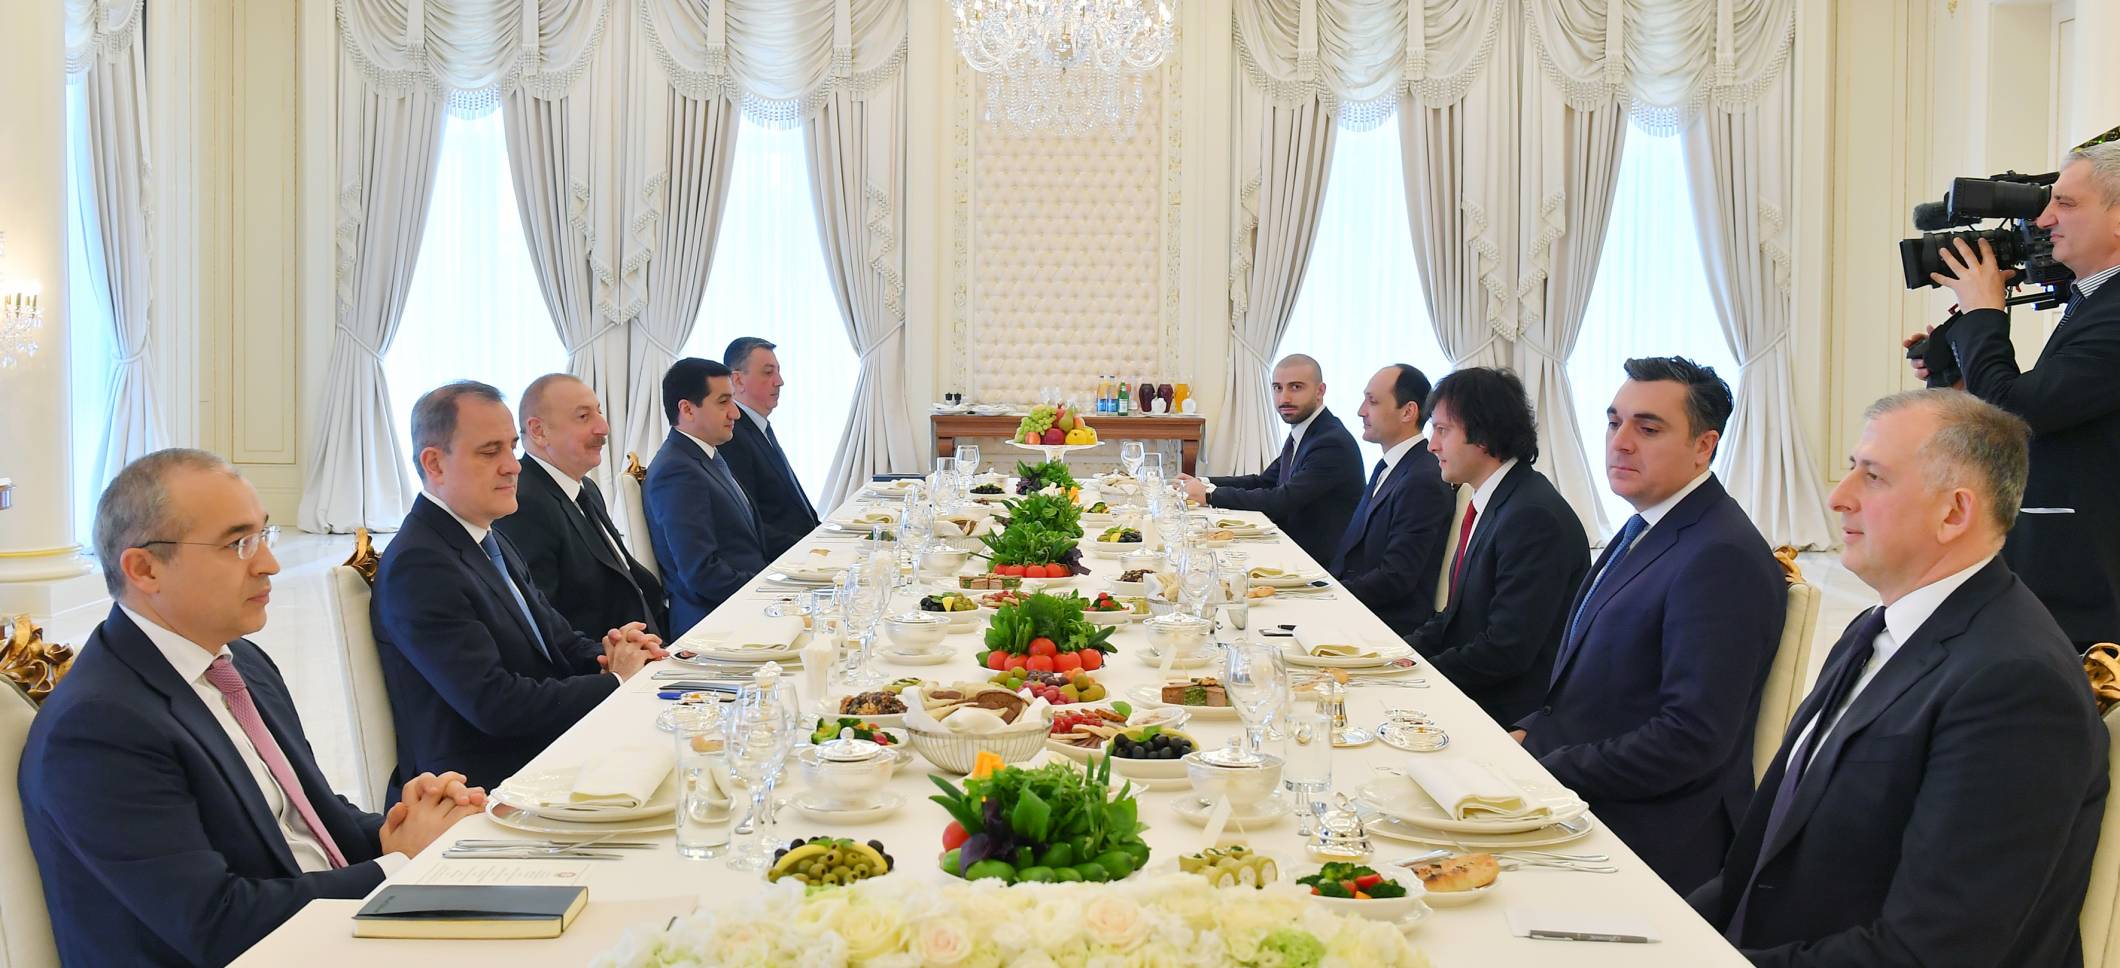 Состоялась встреча Президента Ильхама Алиева с премьер-министром Грузии Ираклием Кобахидзе в расширенном составе